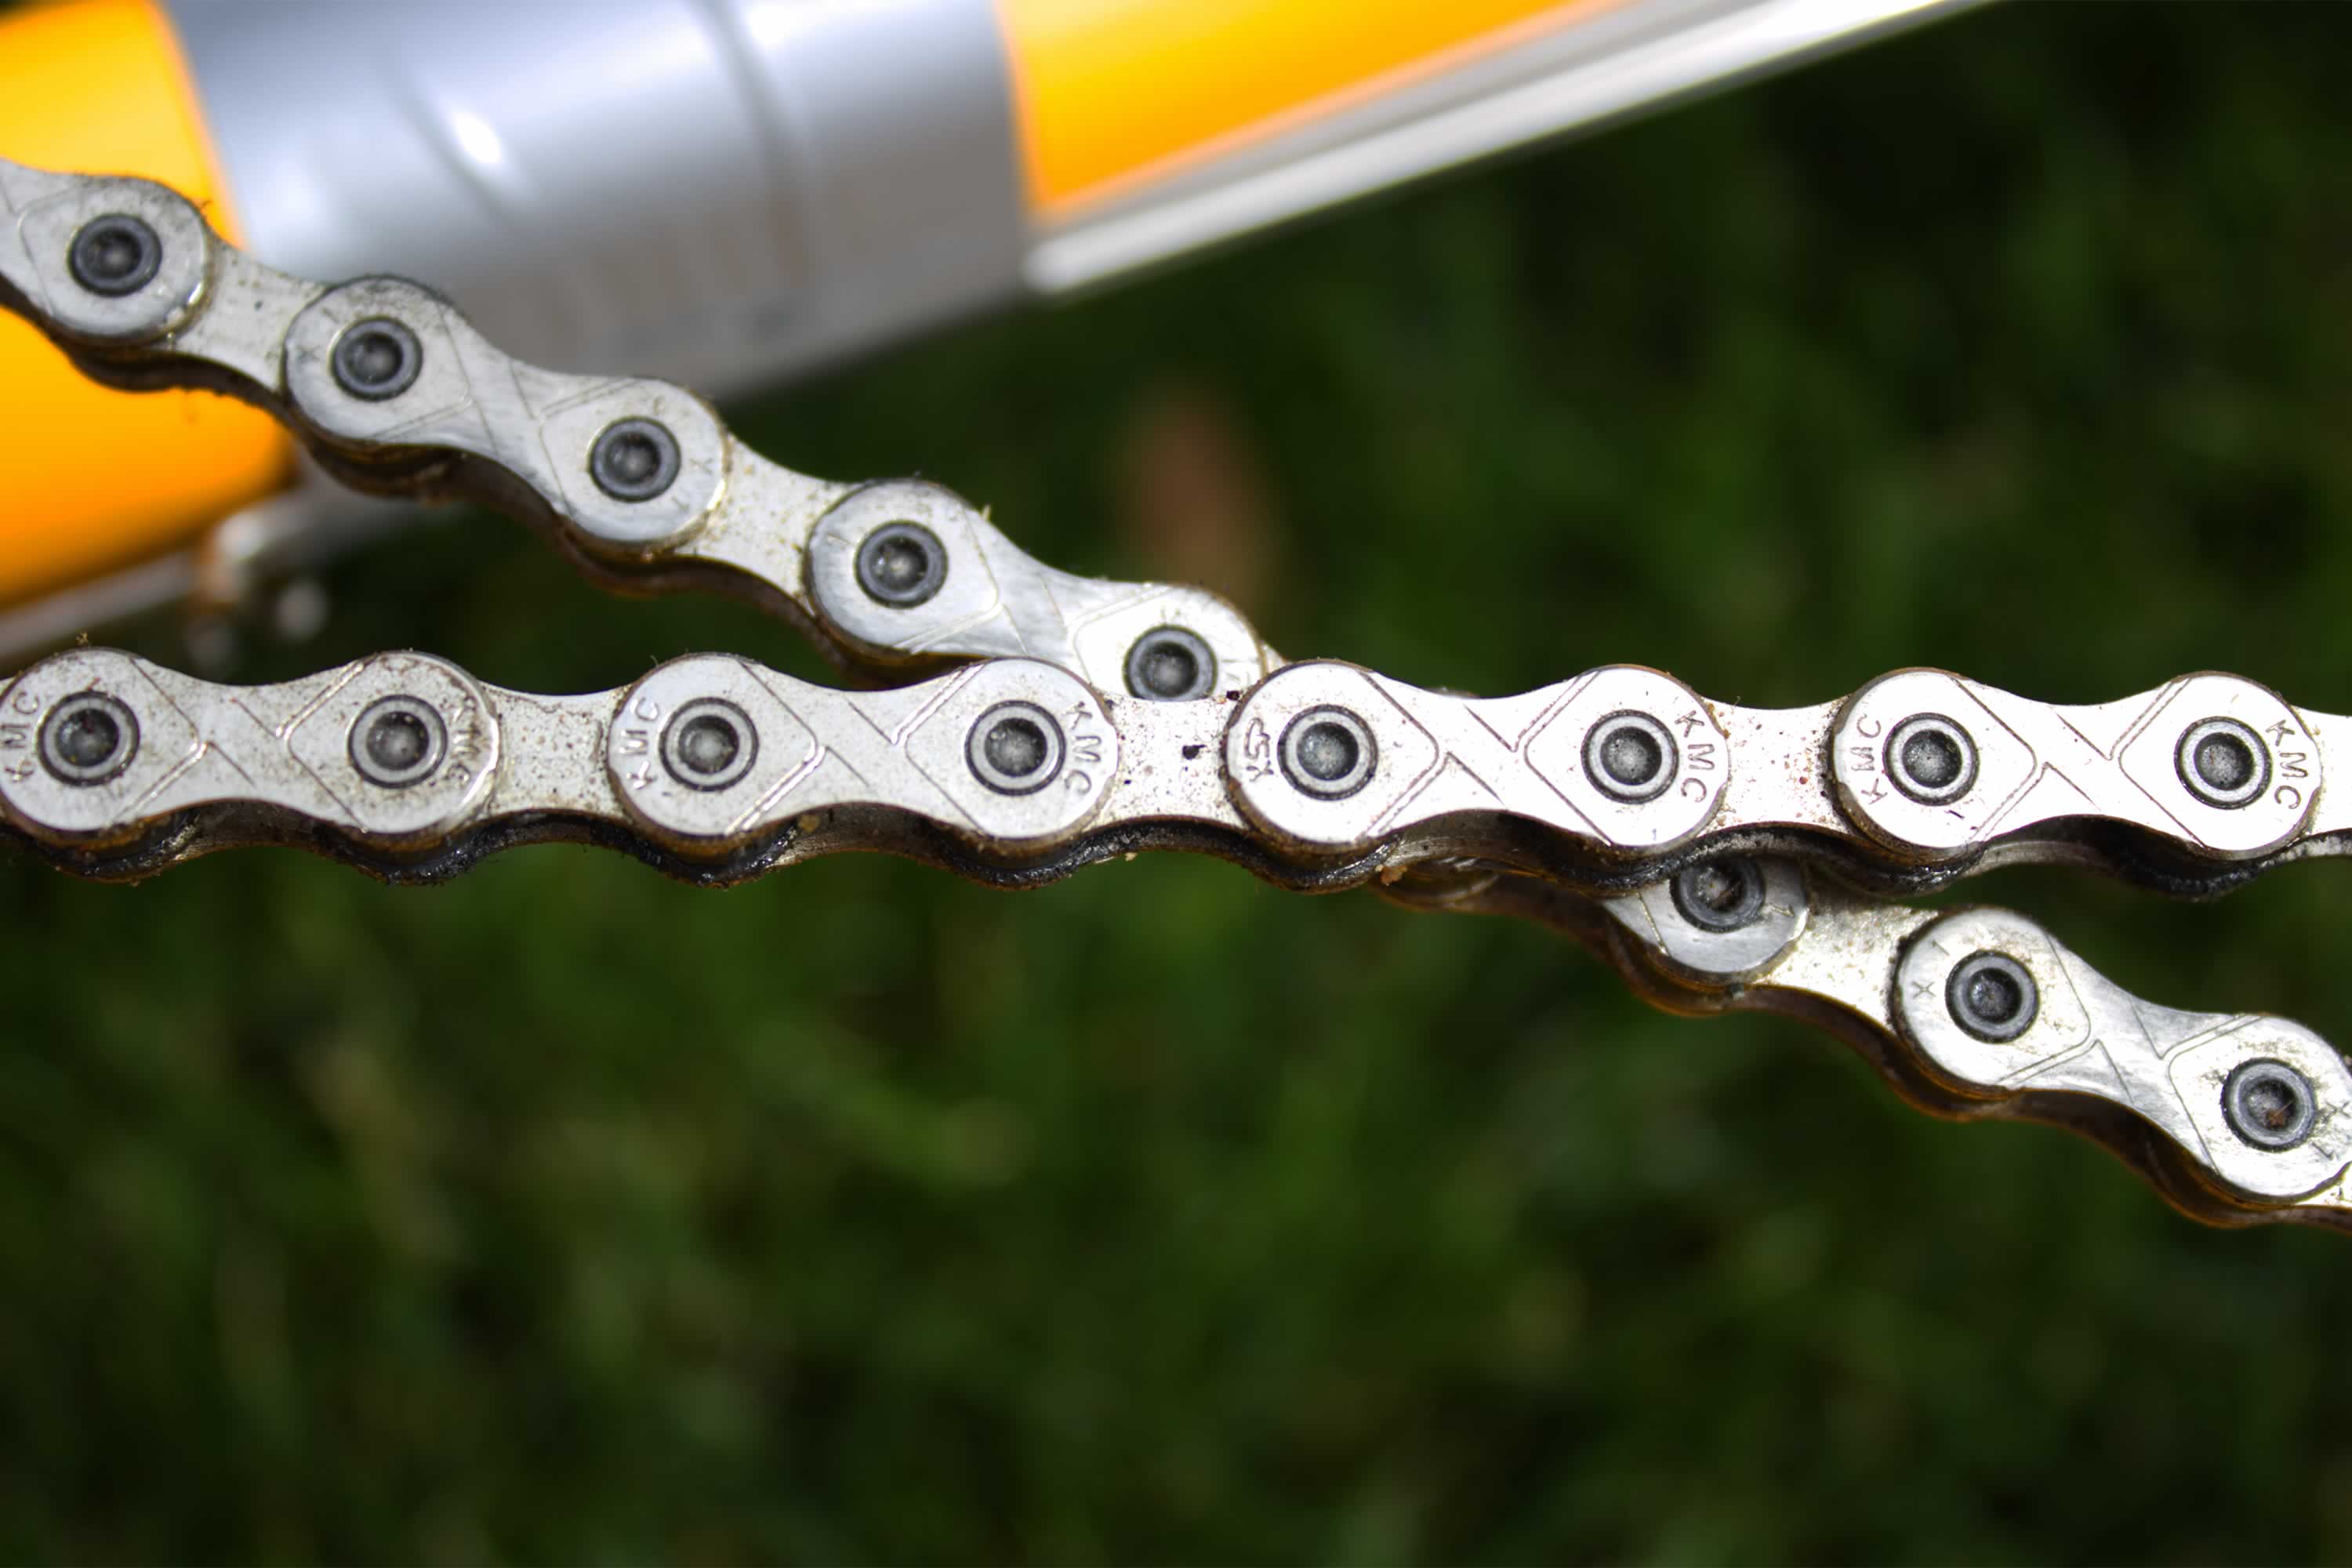 Bike chain. Photo: Olivia Skeers.